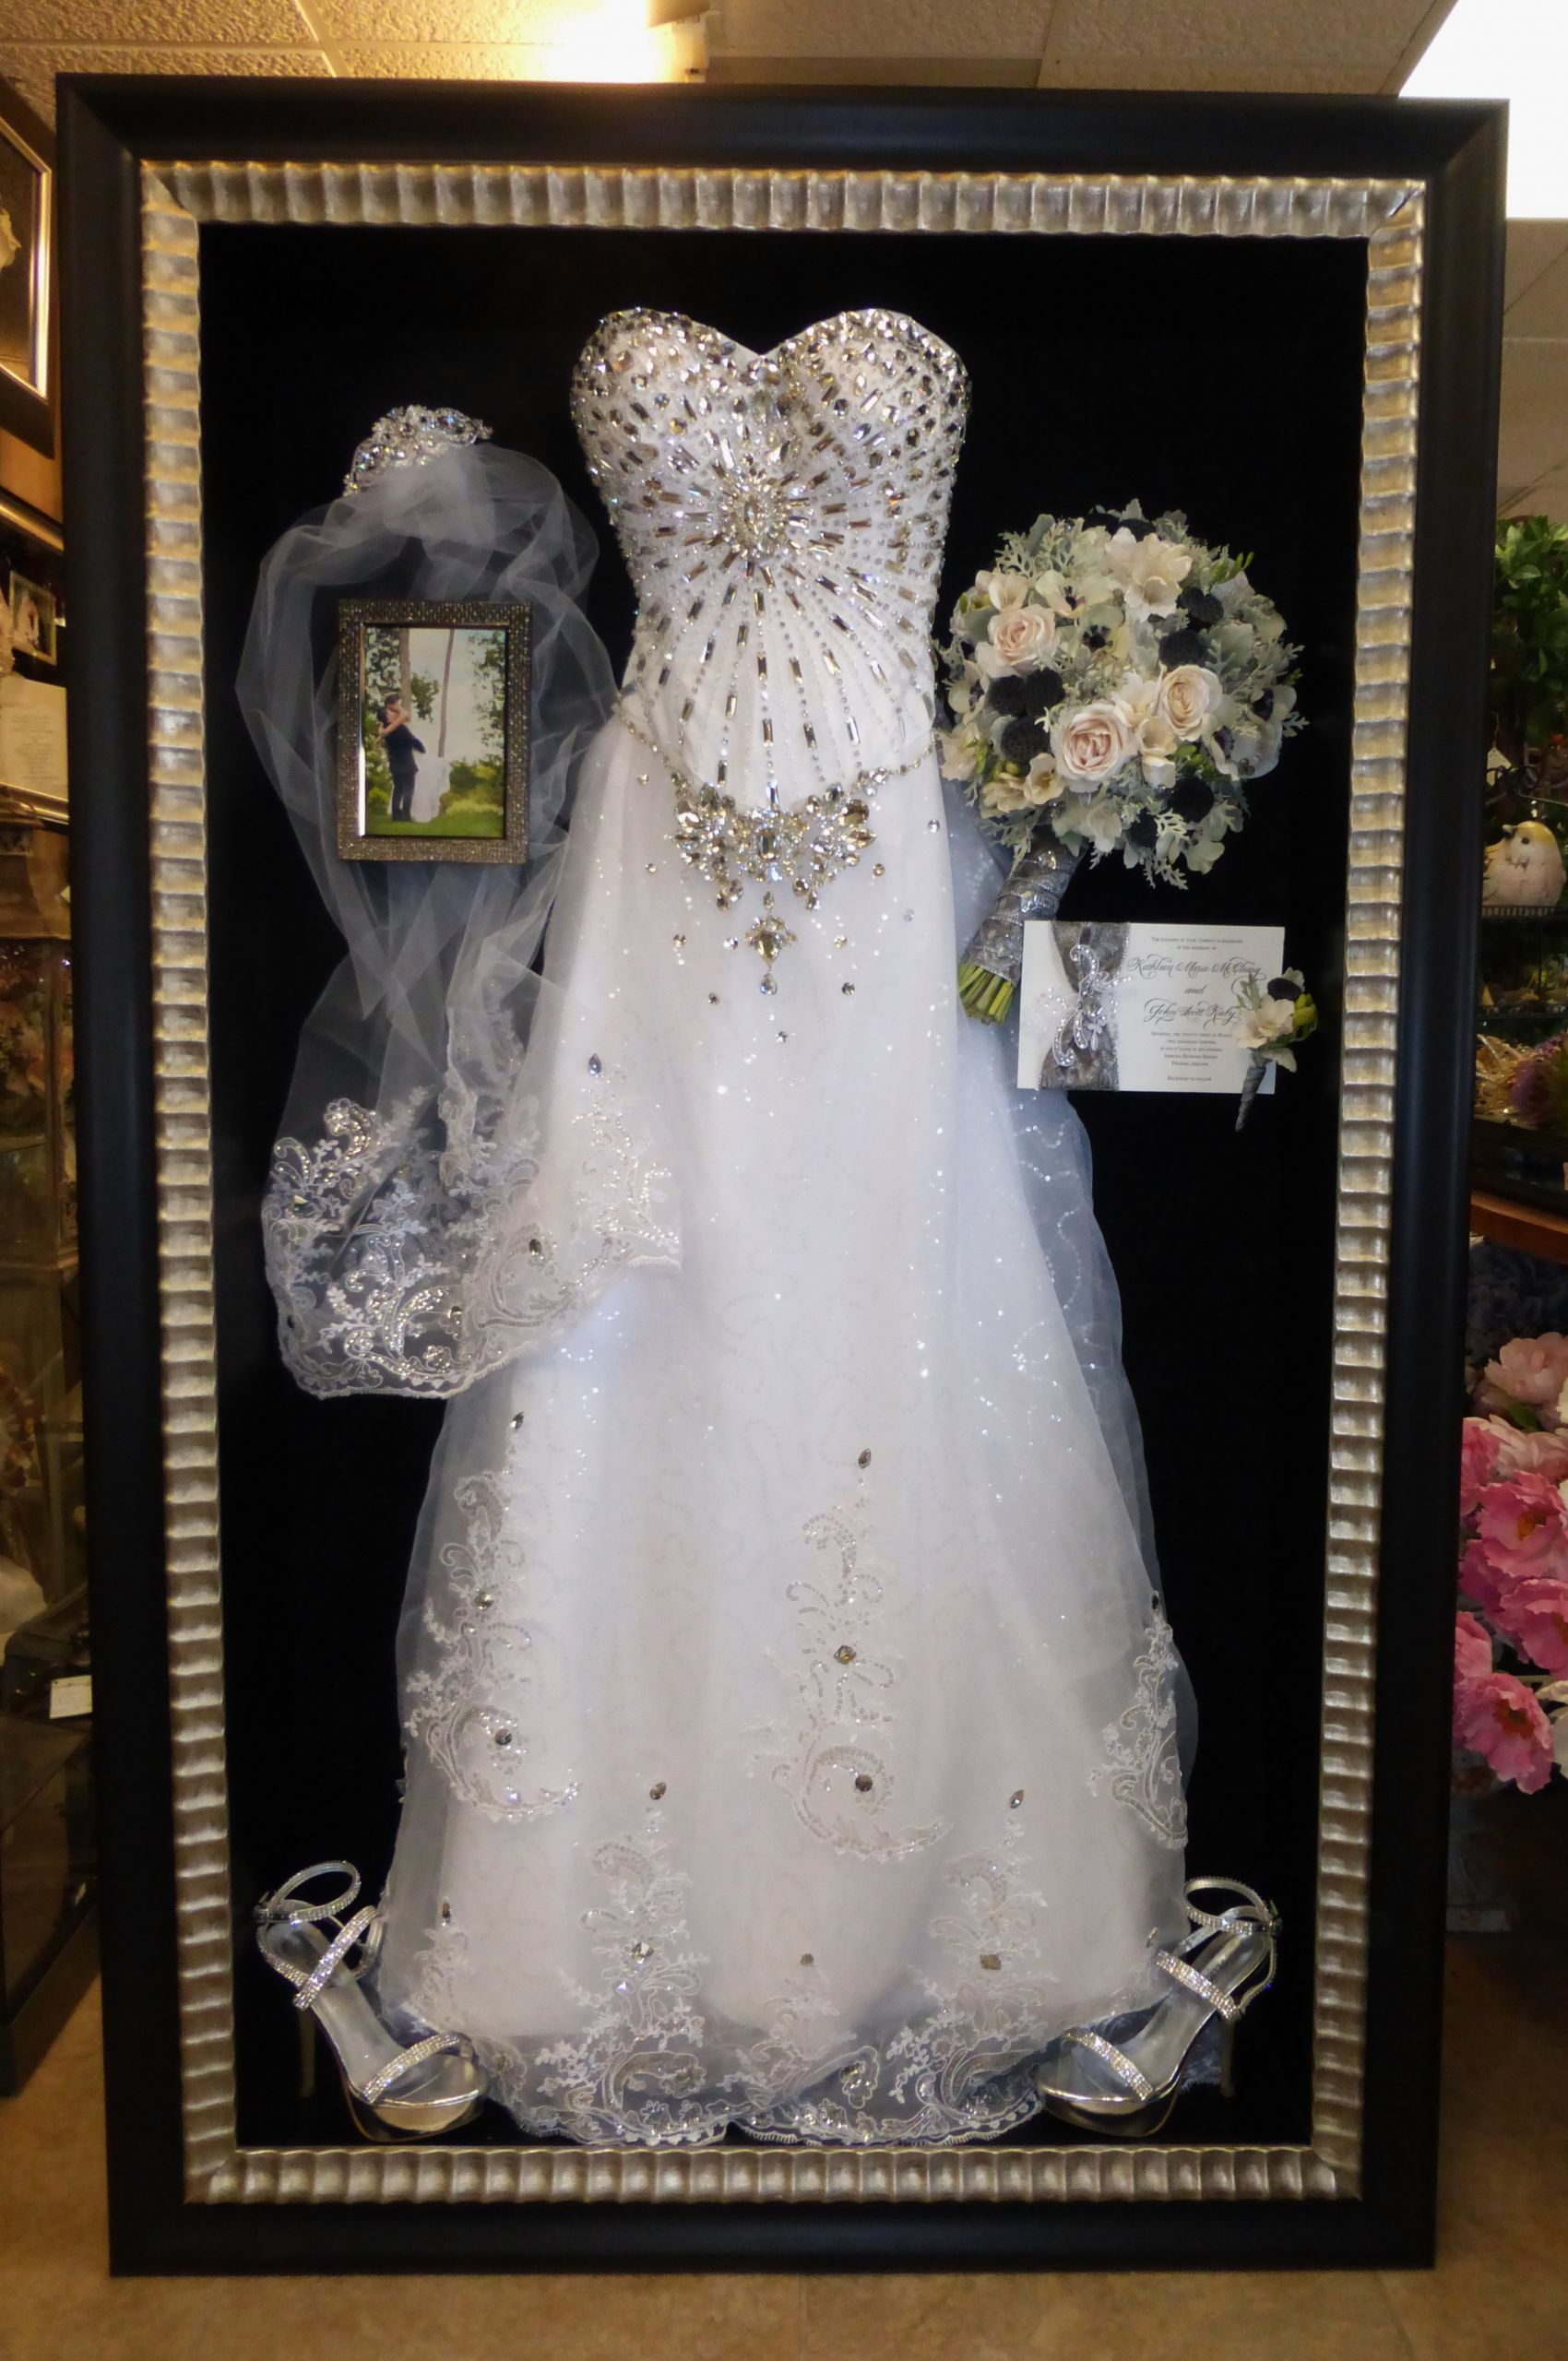 How To Preserve A Wedding Dress
 Wedding Dress Frame Ideas To Preserve Your Precious